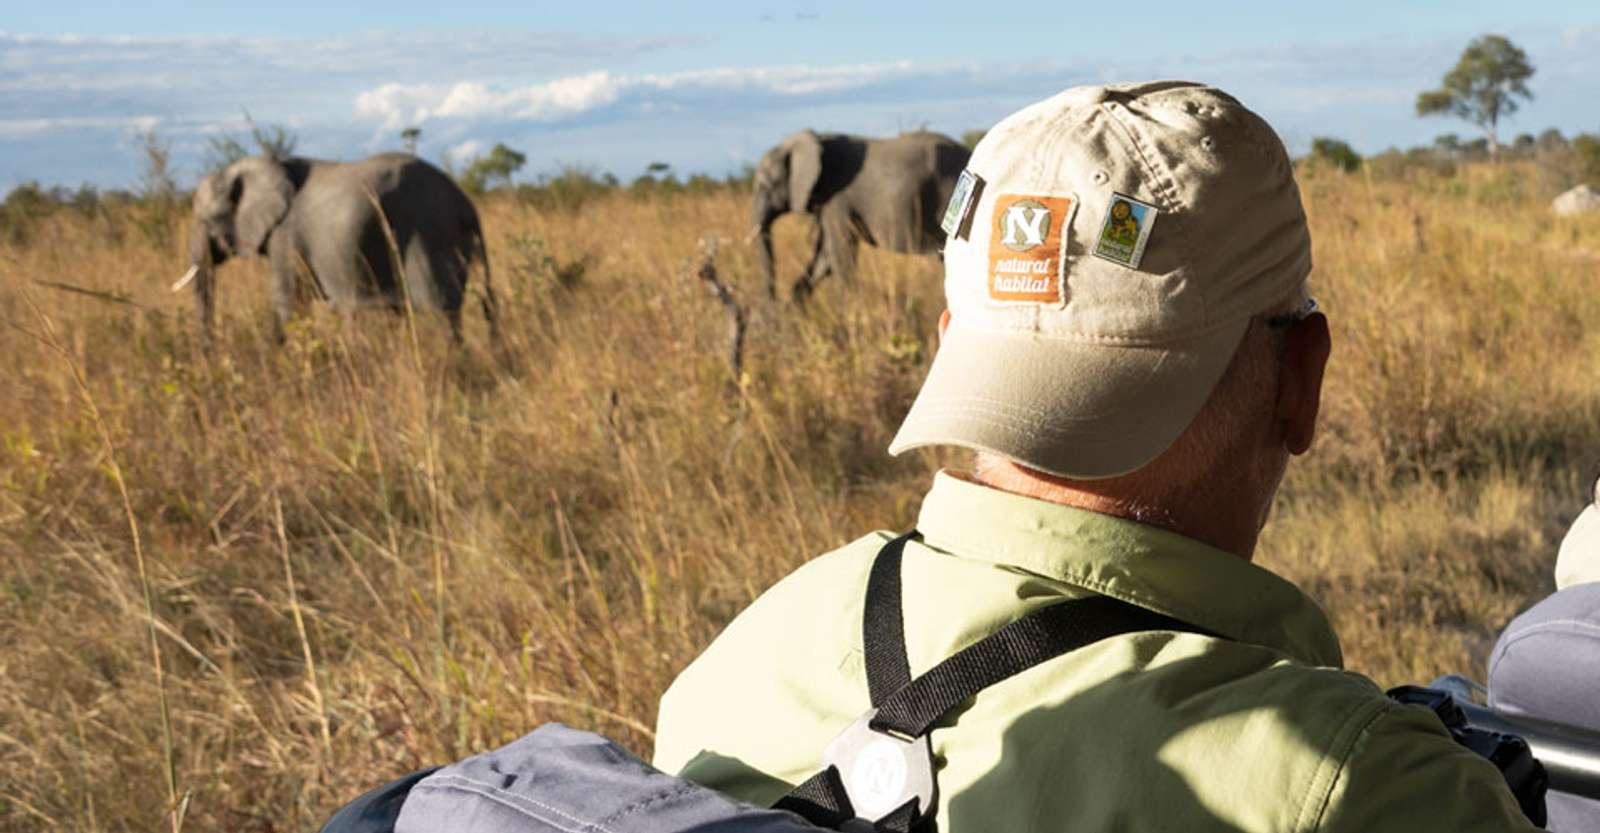 Nat Hab guest and elephants, Hwange National Park, Zimbabwe.